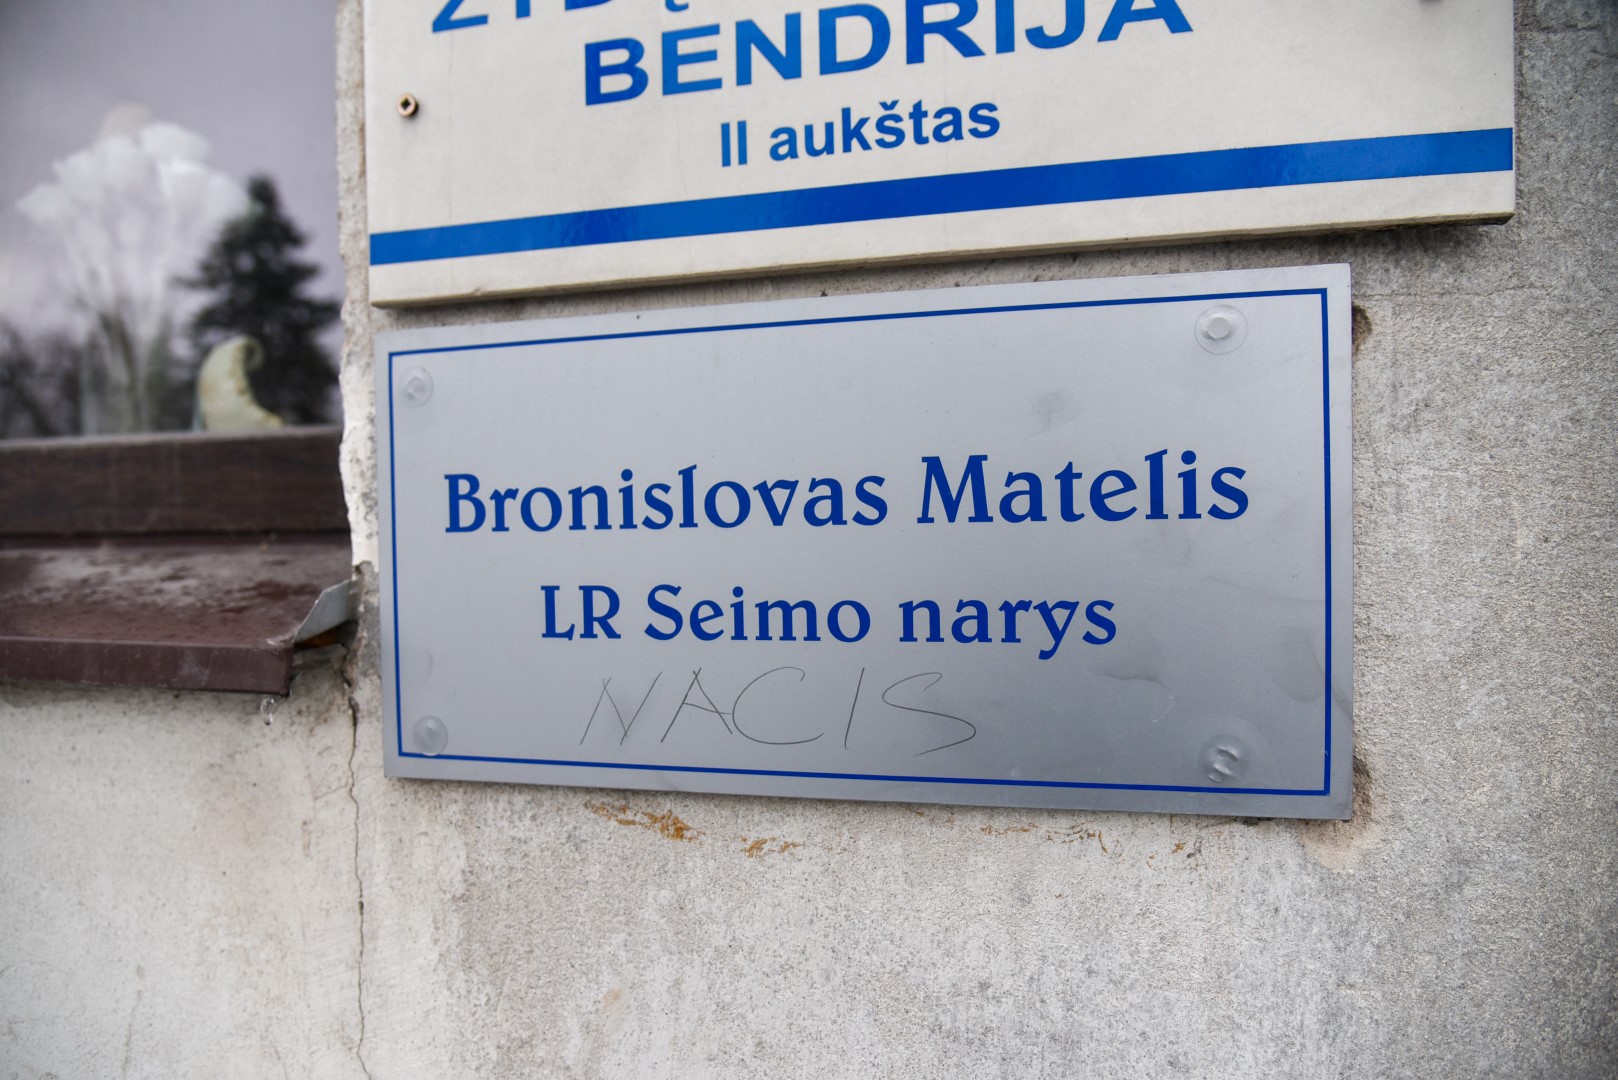 Užrašą „nacis“ ant iškabos po savo vardu ir pavarde radęs Seimo narys konservatorius Bronius Matelis iš karto vandalizmo aktu viešai apkaltino Lietuvos šeimų sąjūdžio atstovus už tai, kad atsisakė su jais susitikti Panevėžyje.